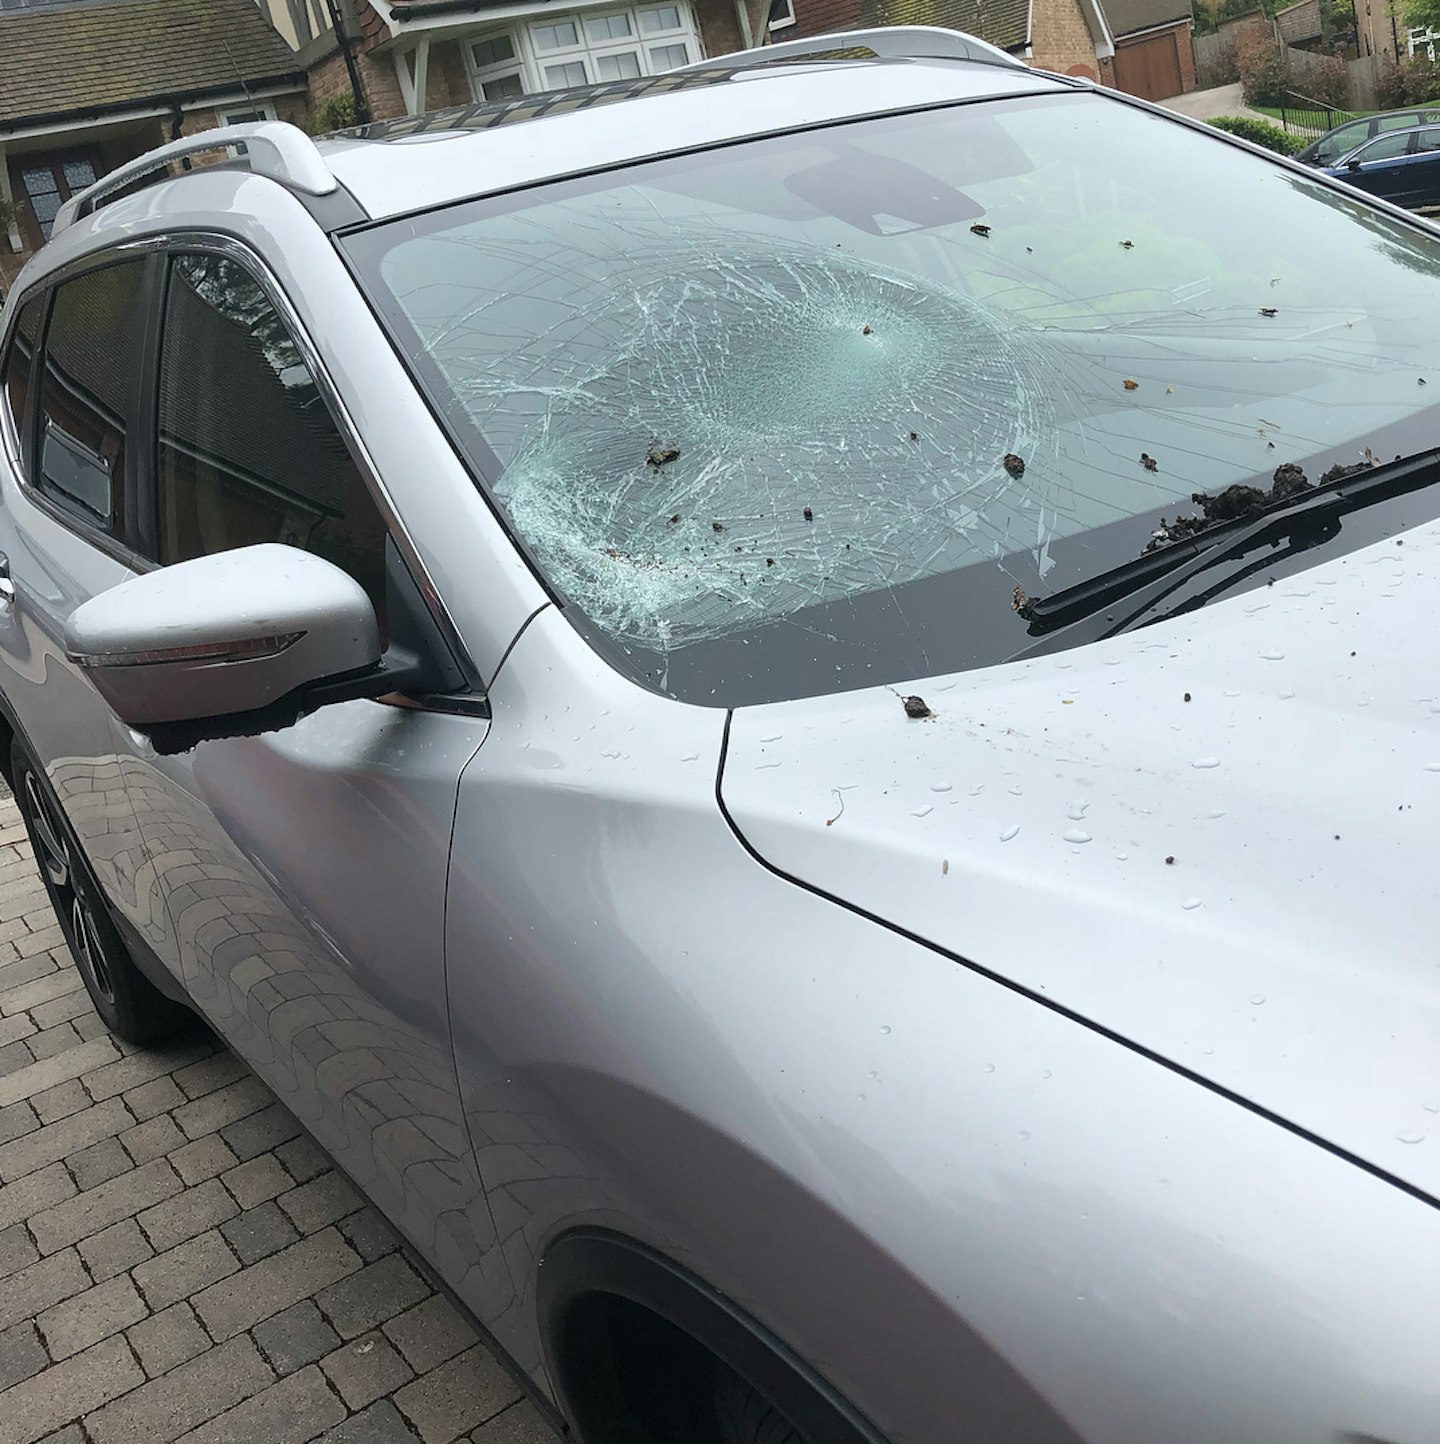 Kerry Katona smashed car